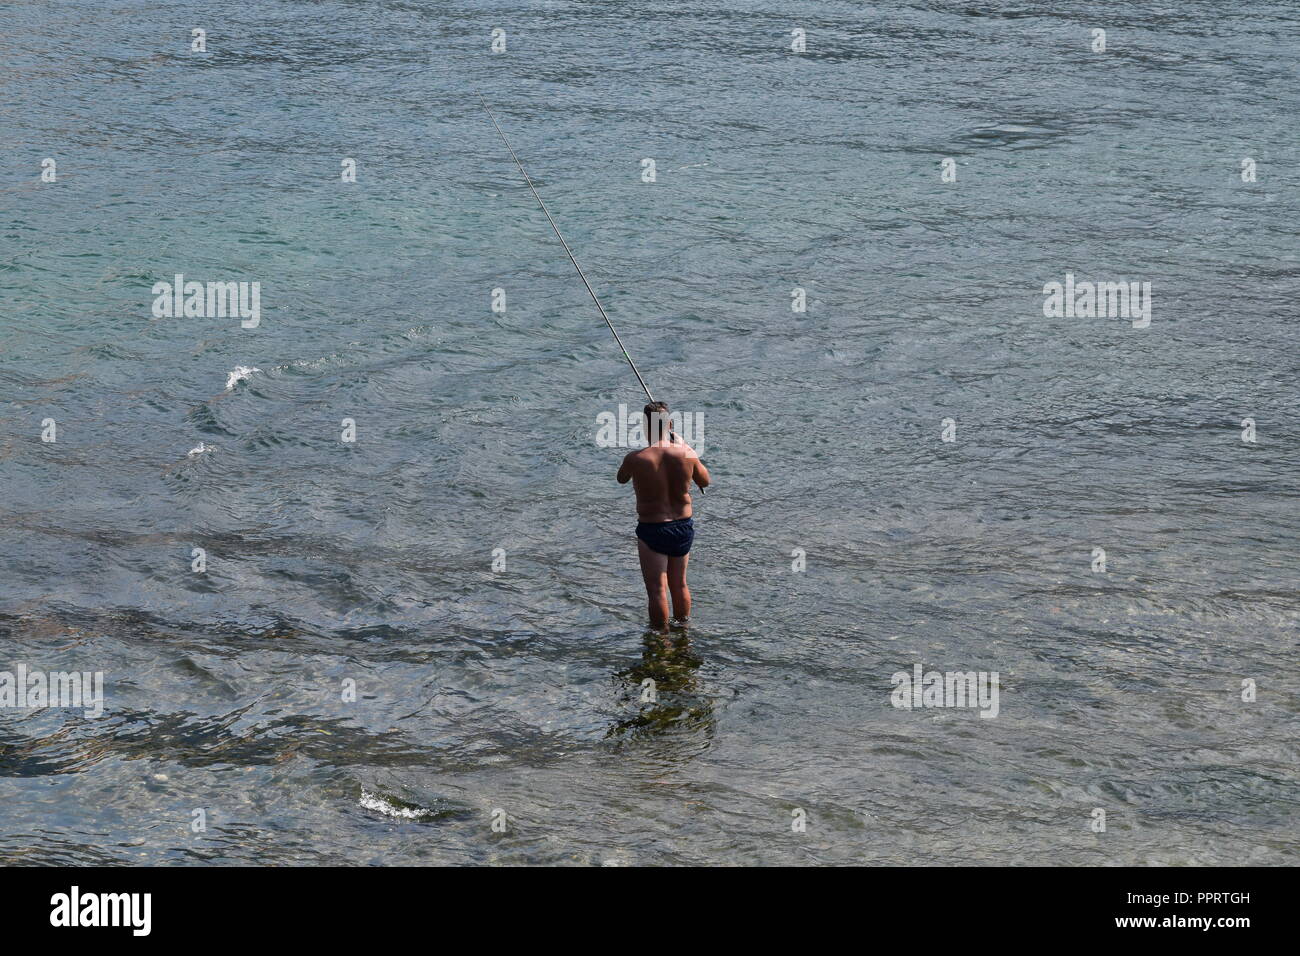 La pesca del giorno ! L'uomo la pesca a Lecco sul Lago di Como. Dove è possibile vedere un uomo in un costume da bagno la pesca ma in Italia ! Foto Stock